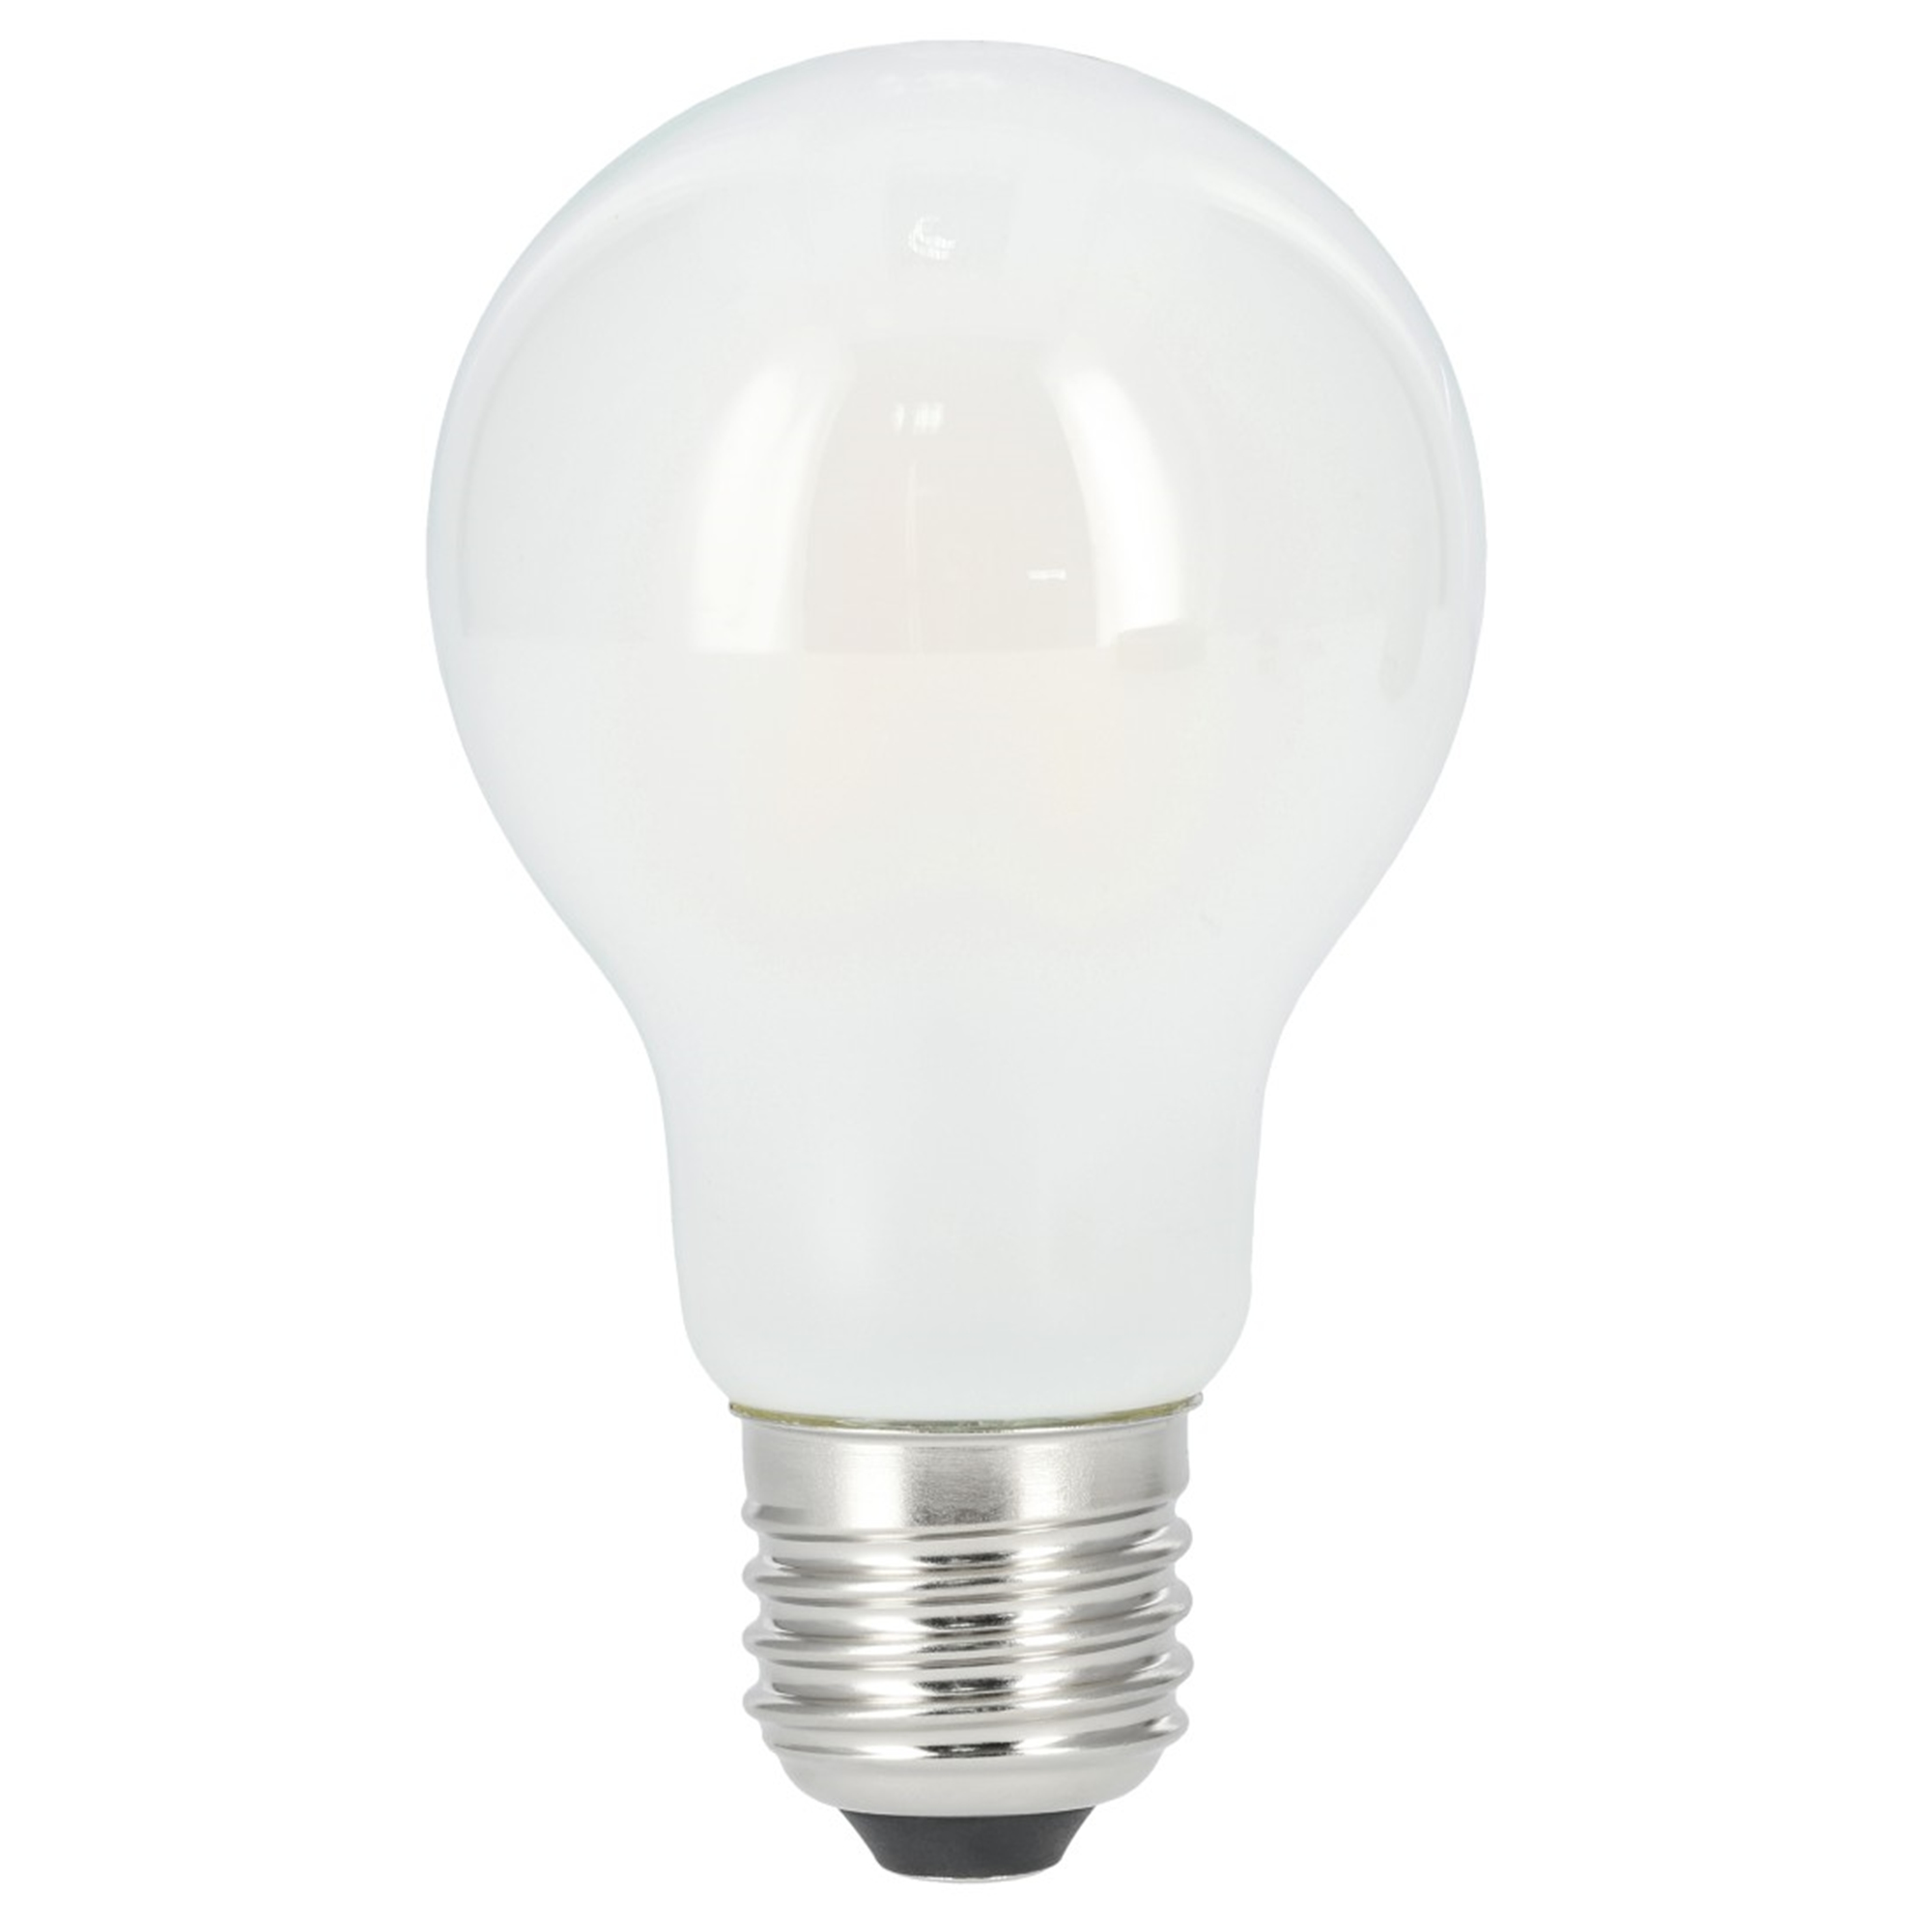 XAVAX E27, ersetzt 806lm LED-Lampe Warmweiß 60W E27